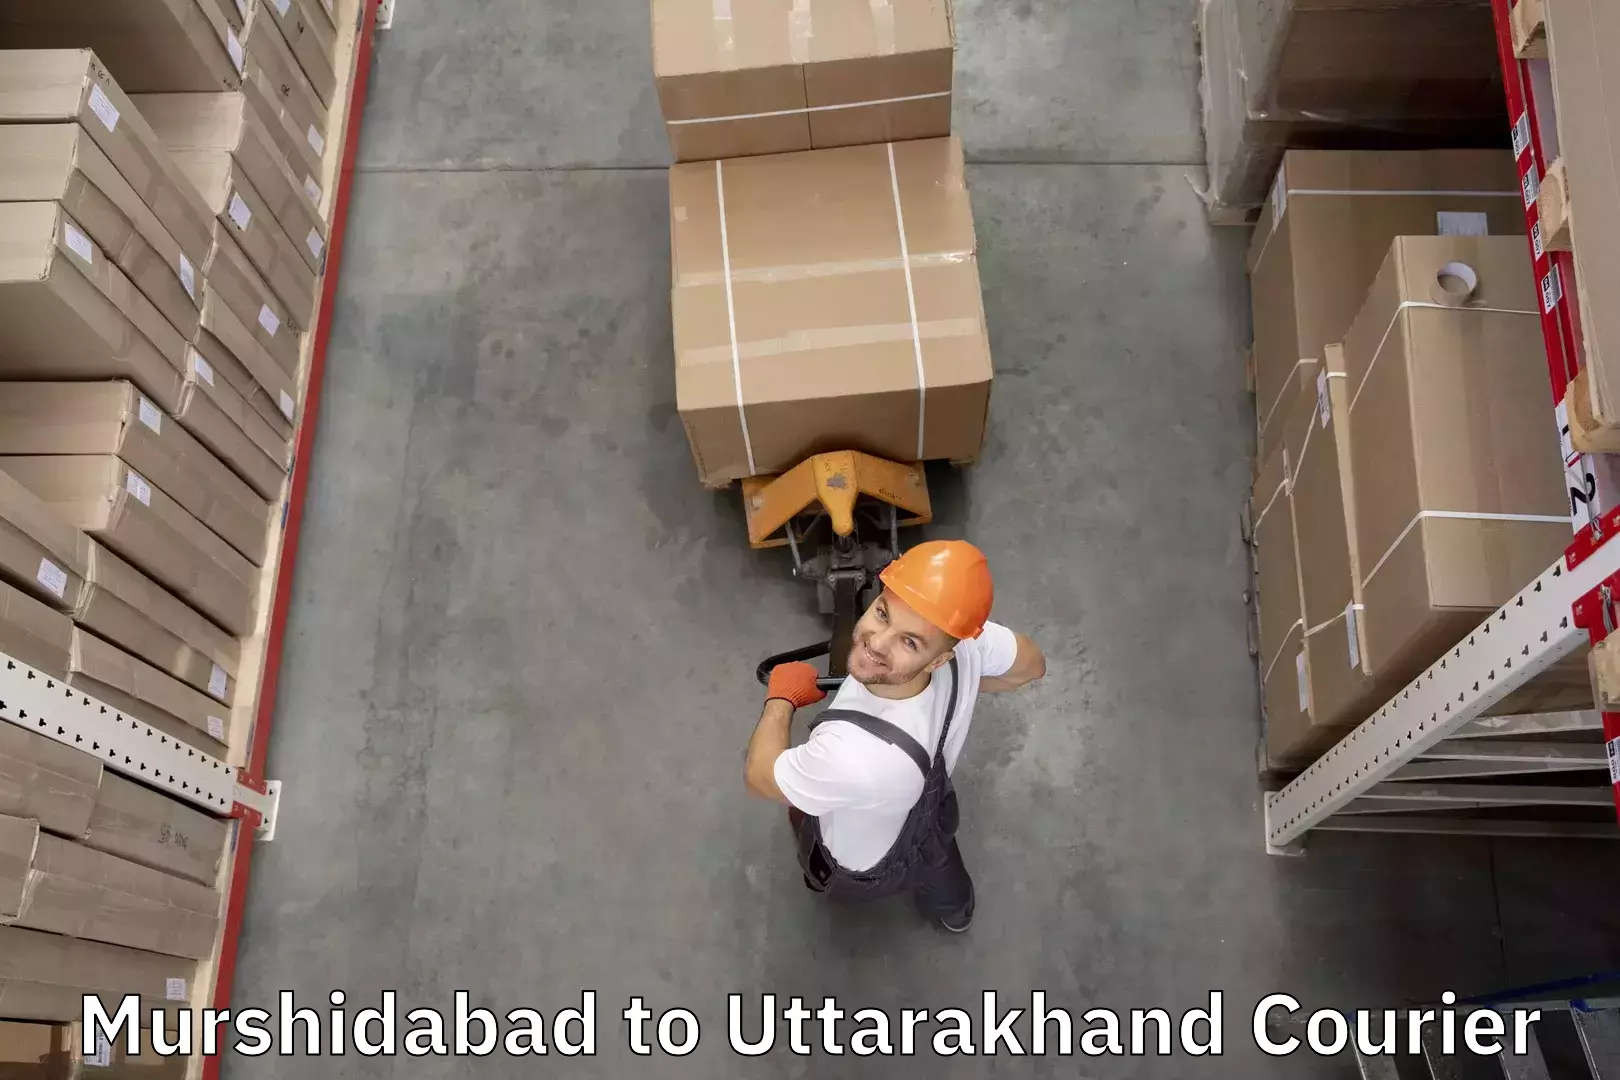 Luggage transport operations Murshidabad to Uttarakhand